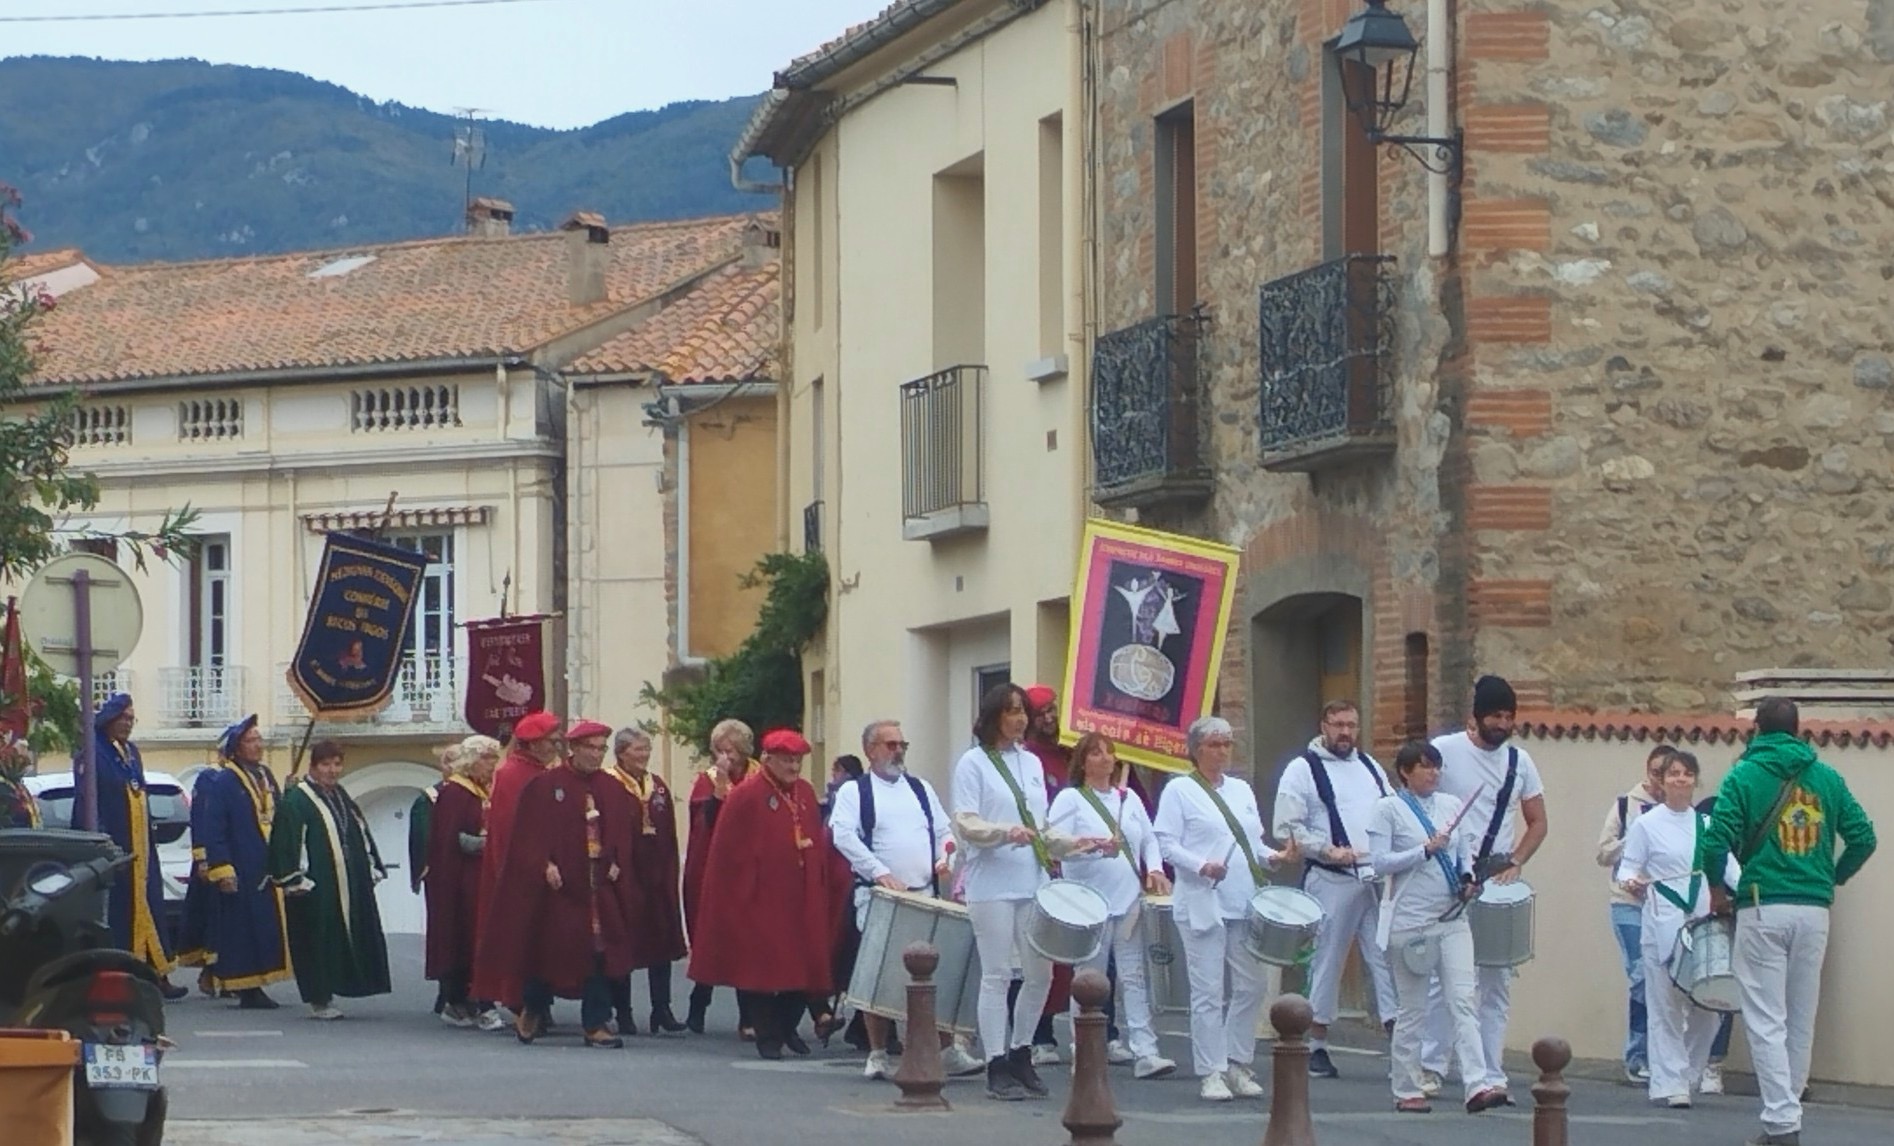 La Confrérie des Vinaigre Xuclata à fait appel à Catala que ta pour animer son défiler dans les rues de St Génis des fontaines ! 